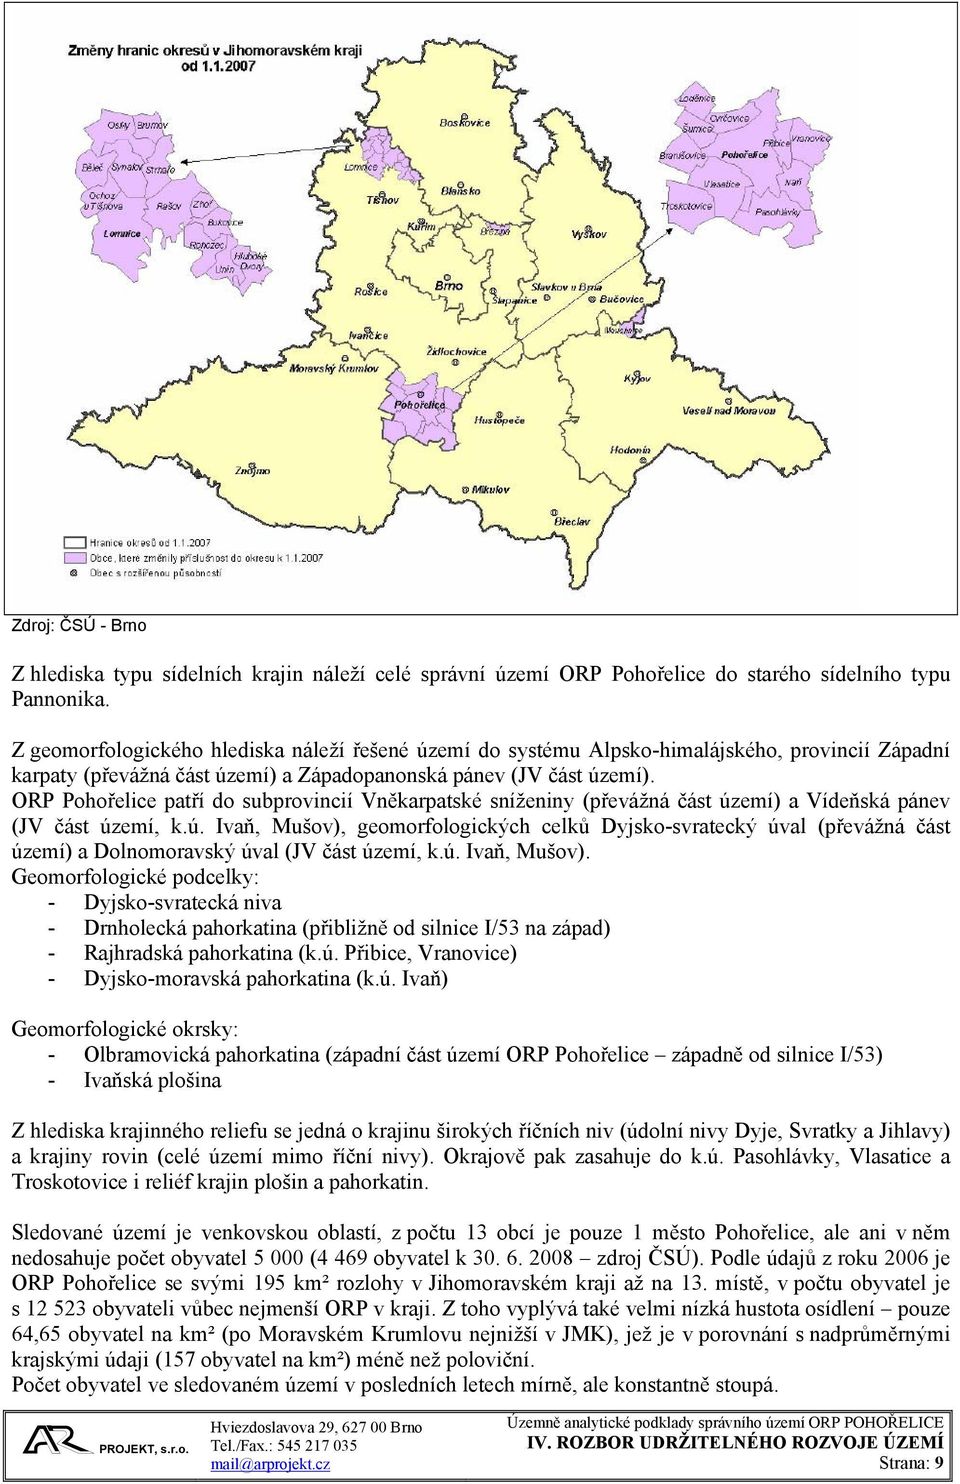 ORP Pohořelice patří do subprovincií Vněkarpatské sníženiny (převážná část území) a Vídeňská pánev (JV část území, k.ú. Ivaň, Mušov), geomorfologických celků Dyjsko-svratecký úval (převážná část území) a Dolnomoravský úval (JV část území, k.